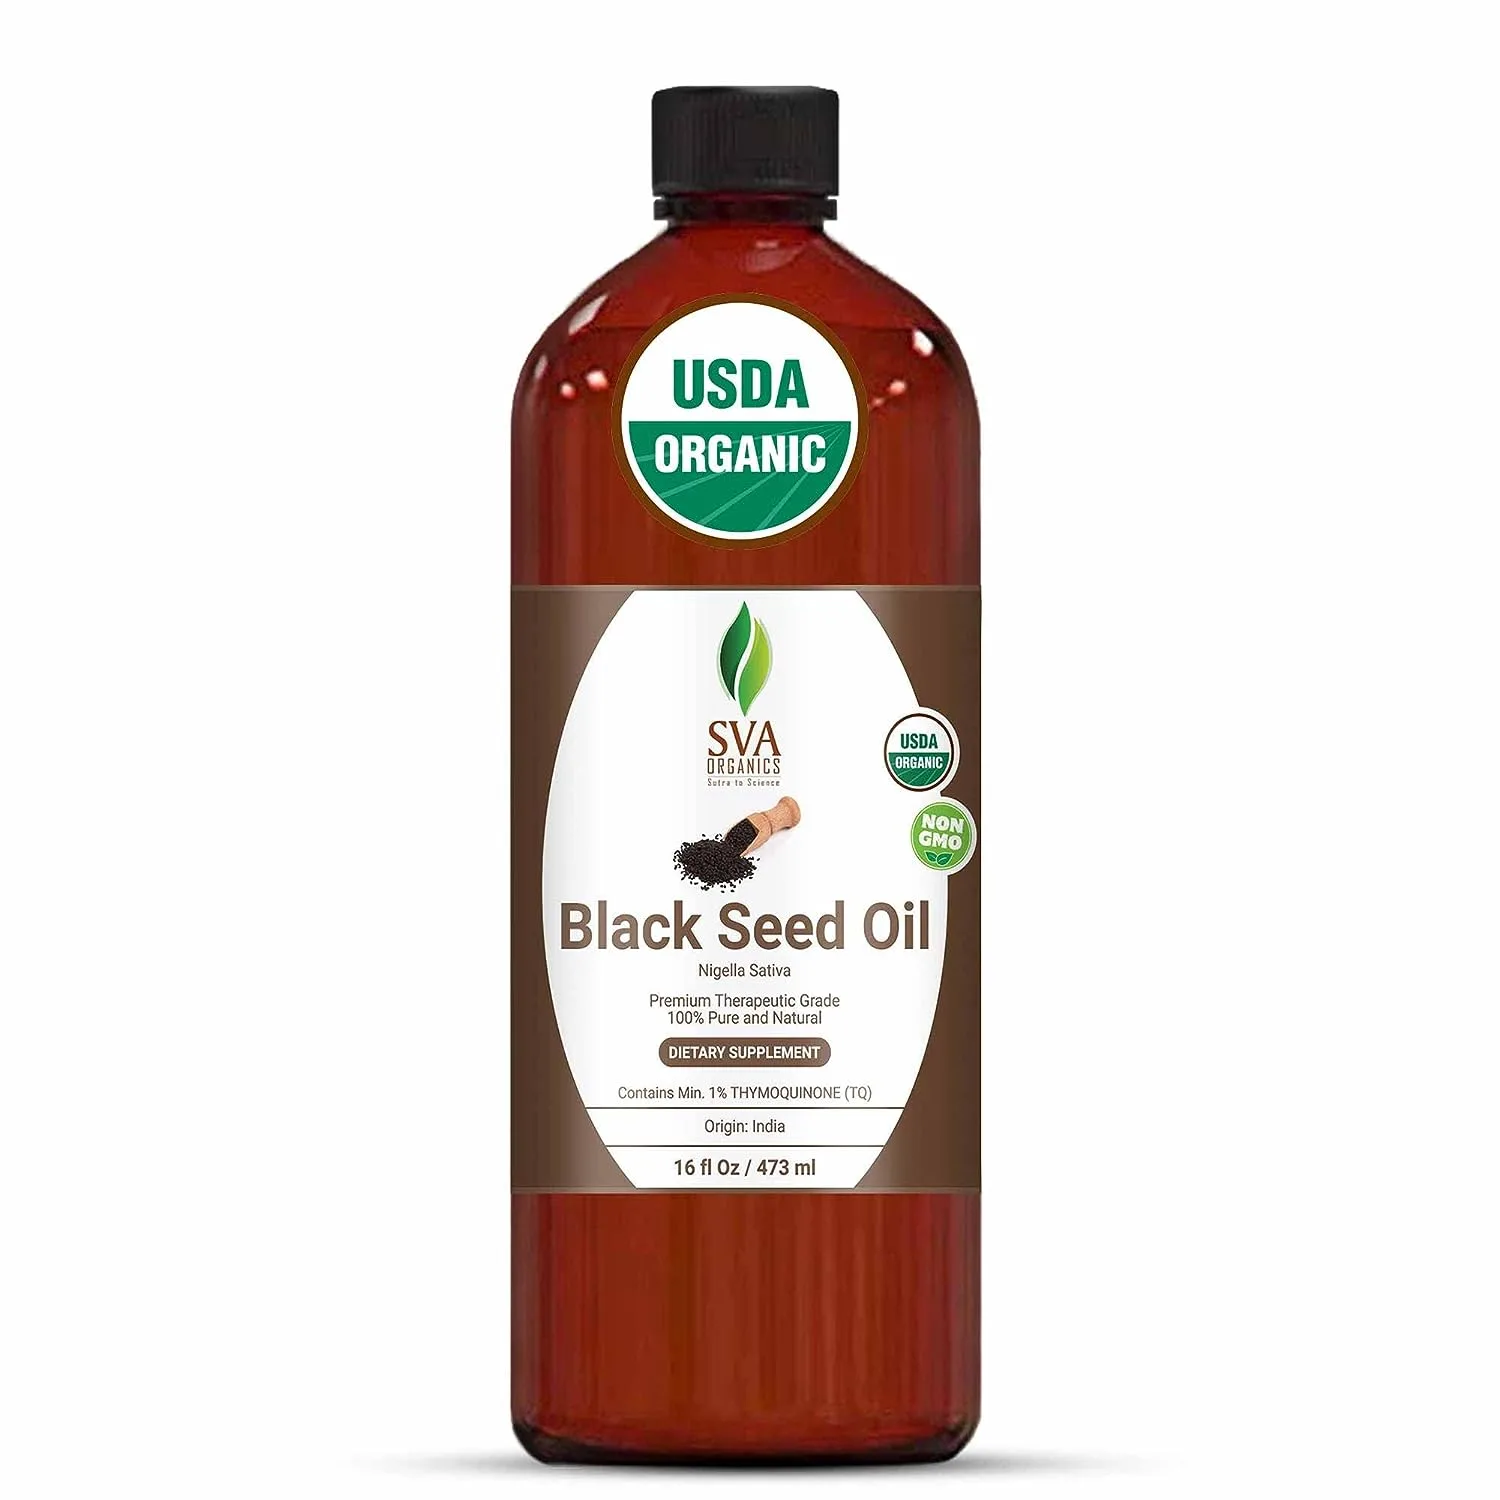 SVA Organics Black Seed Oil